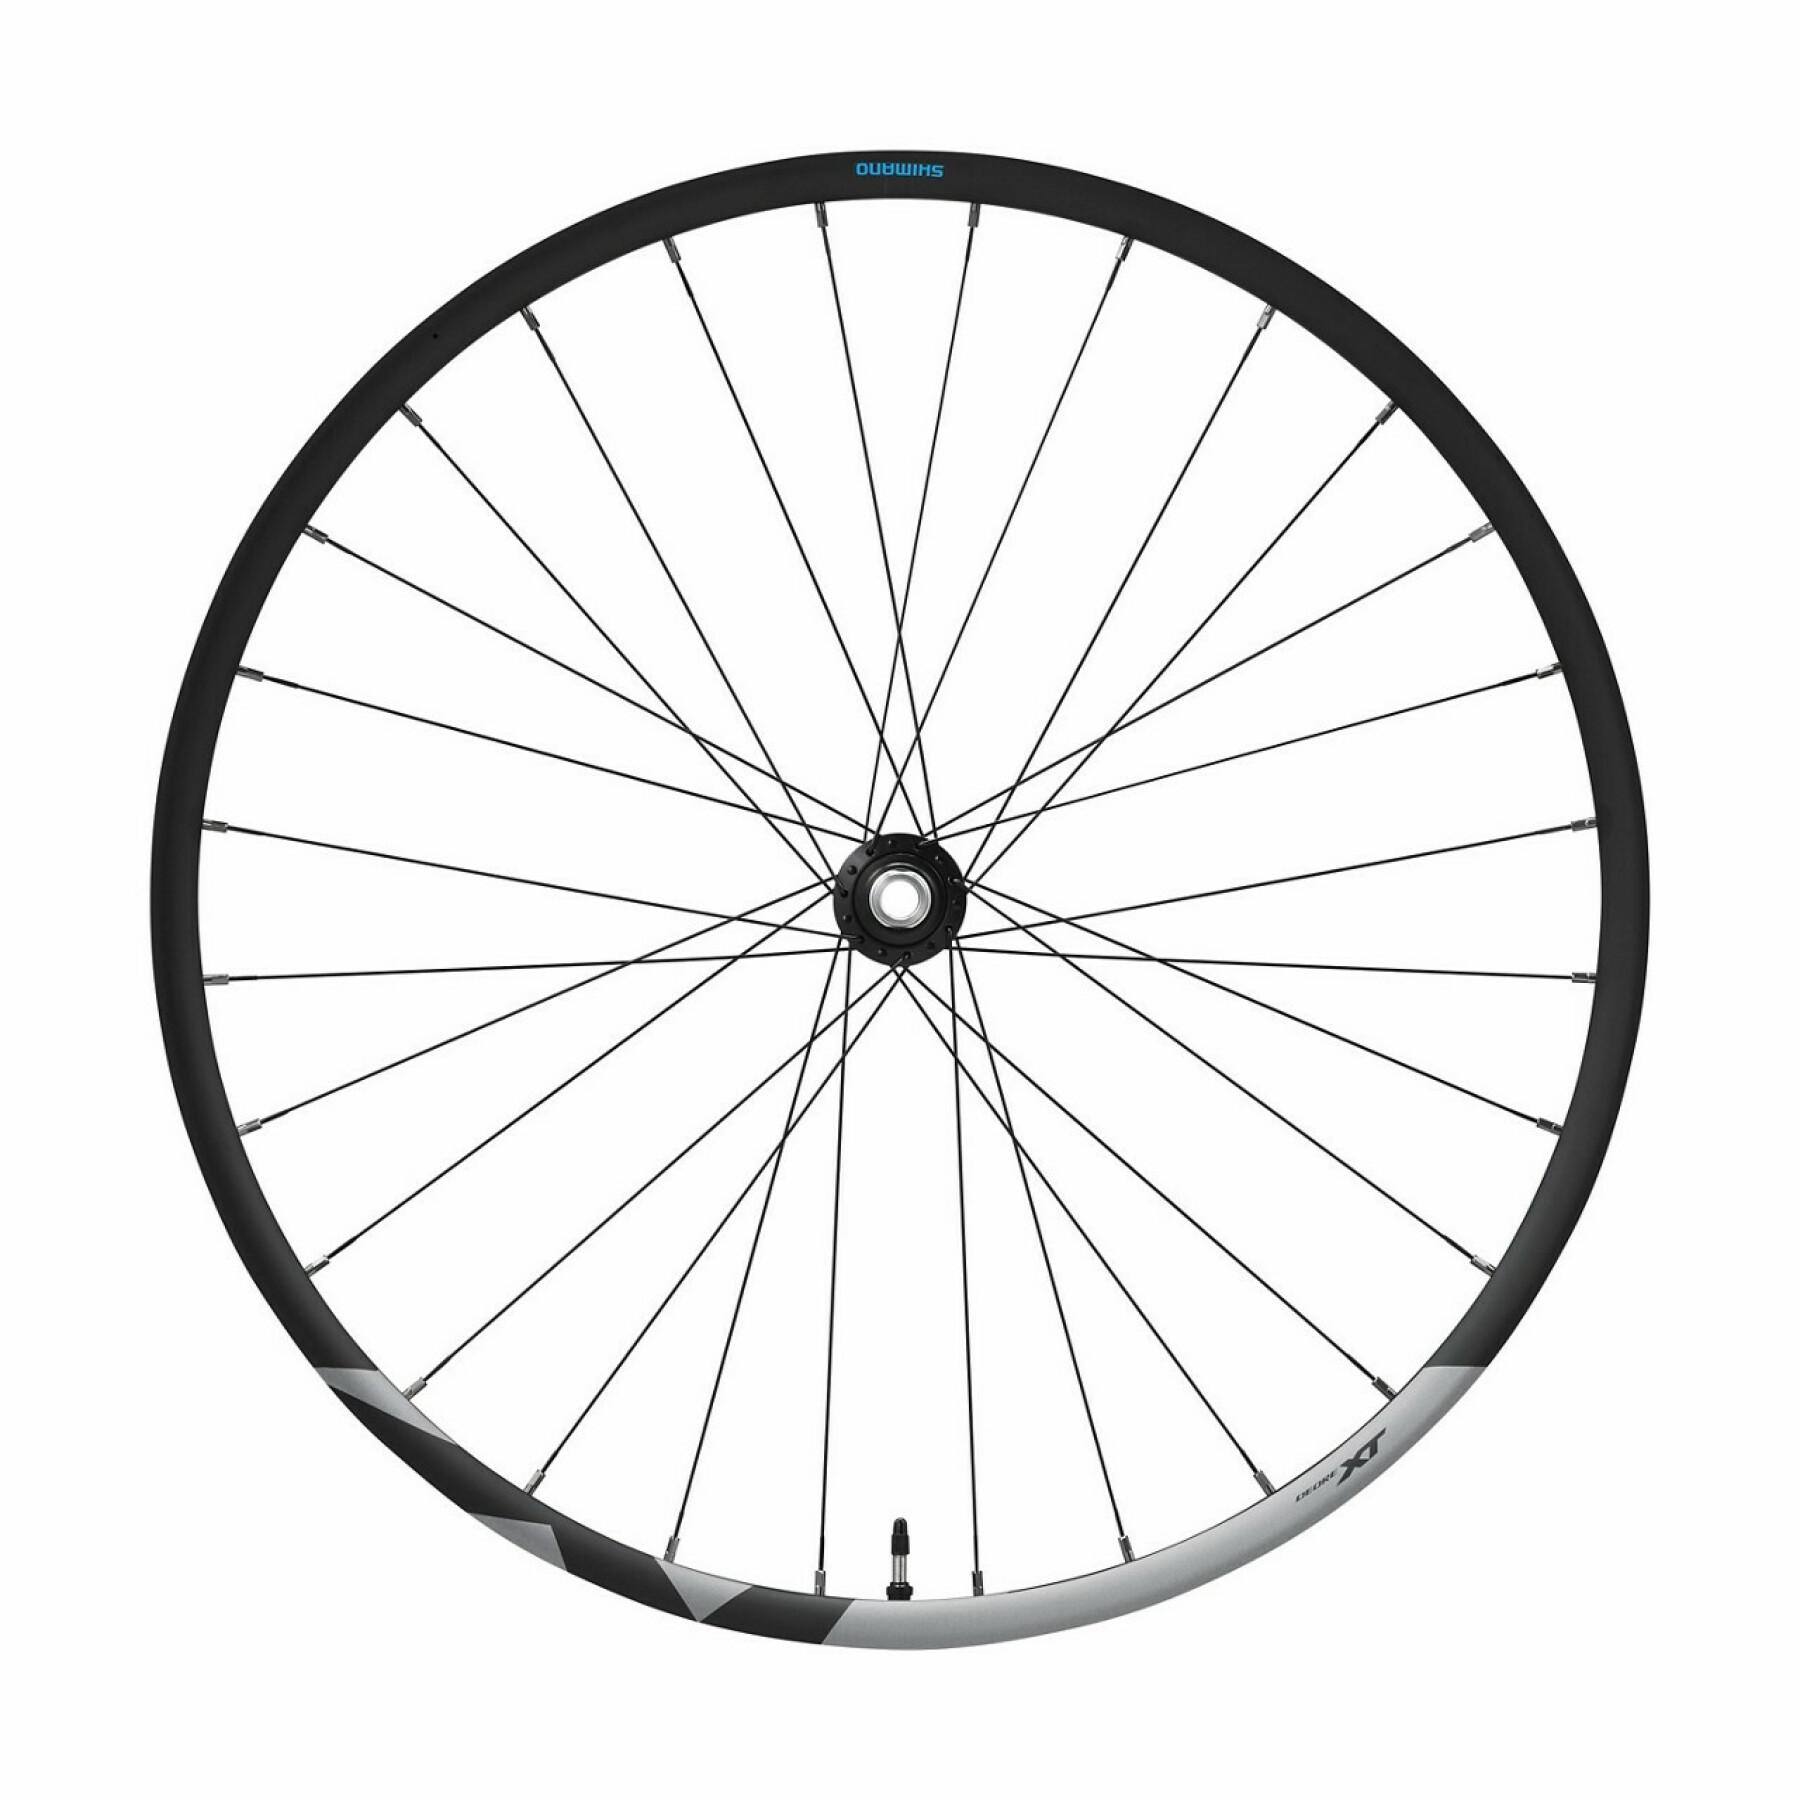 Bloqueo central de los frenos de disco de las ruedas de bicicleta Shimano Deore XT WH-M8120